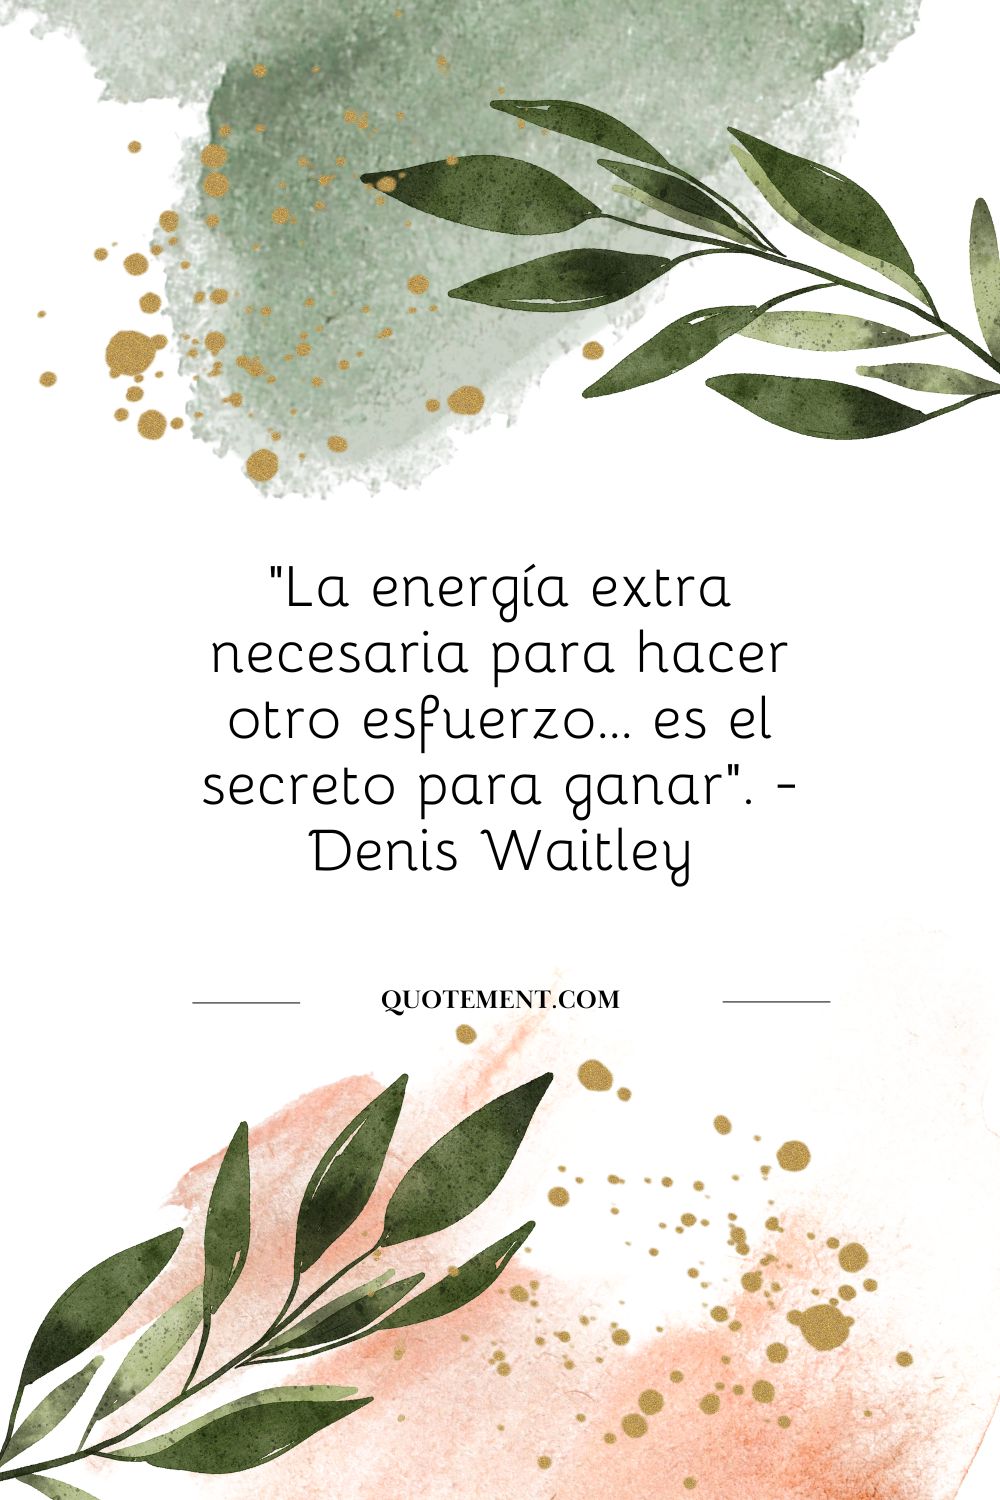 "La energía extra necesaria para hacer otro esfuerzo... es el secreto de ganar". - Denis Waitley